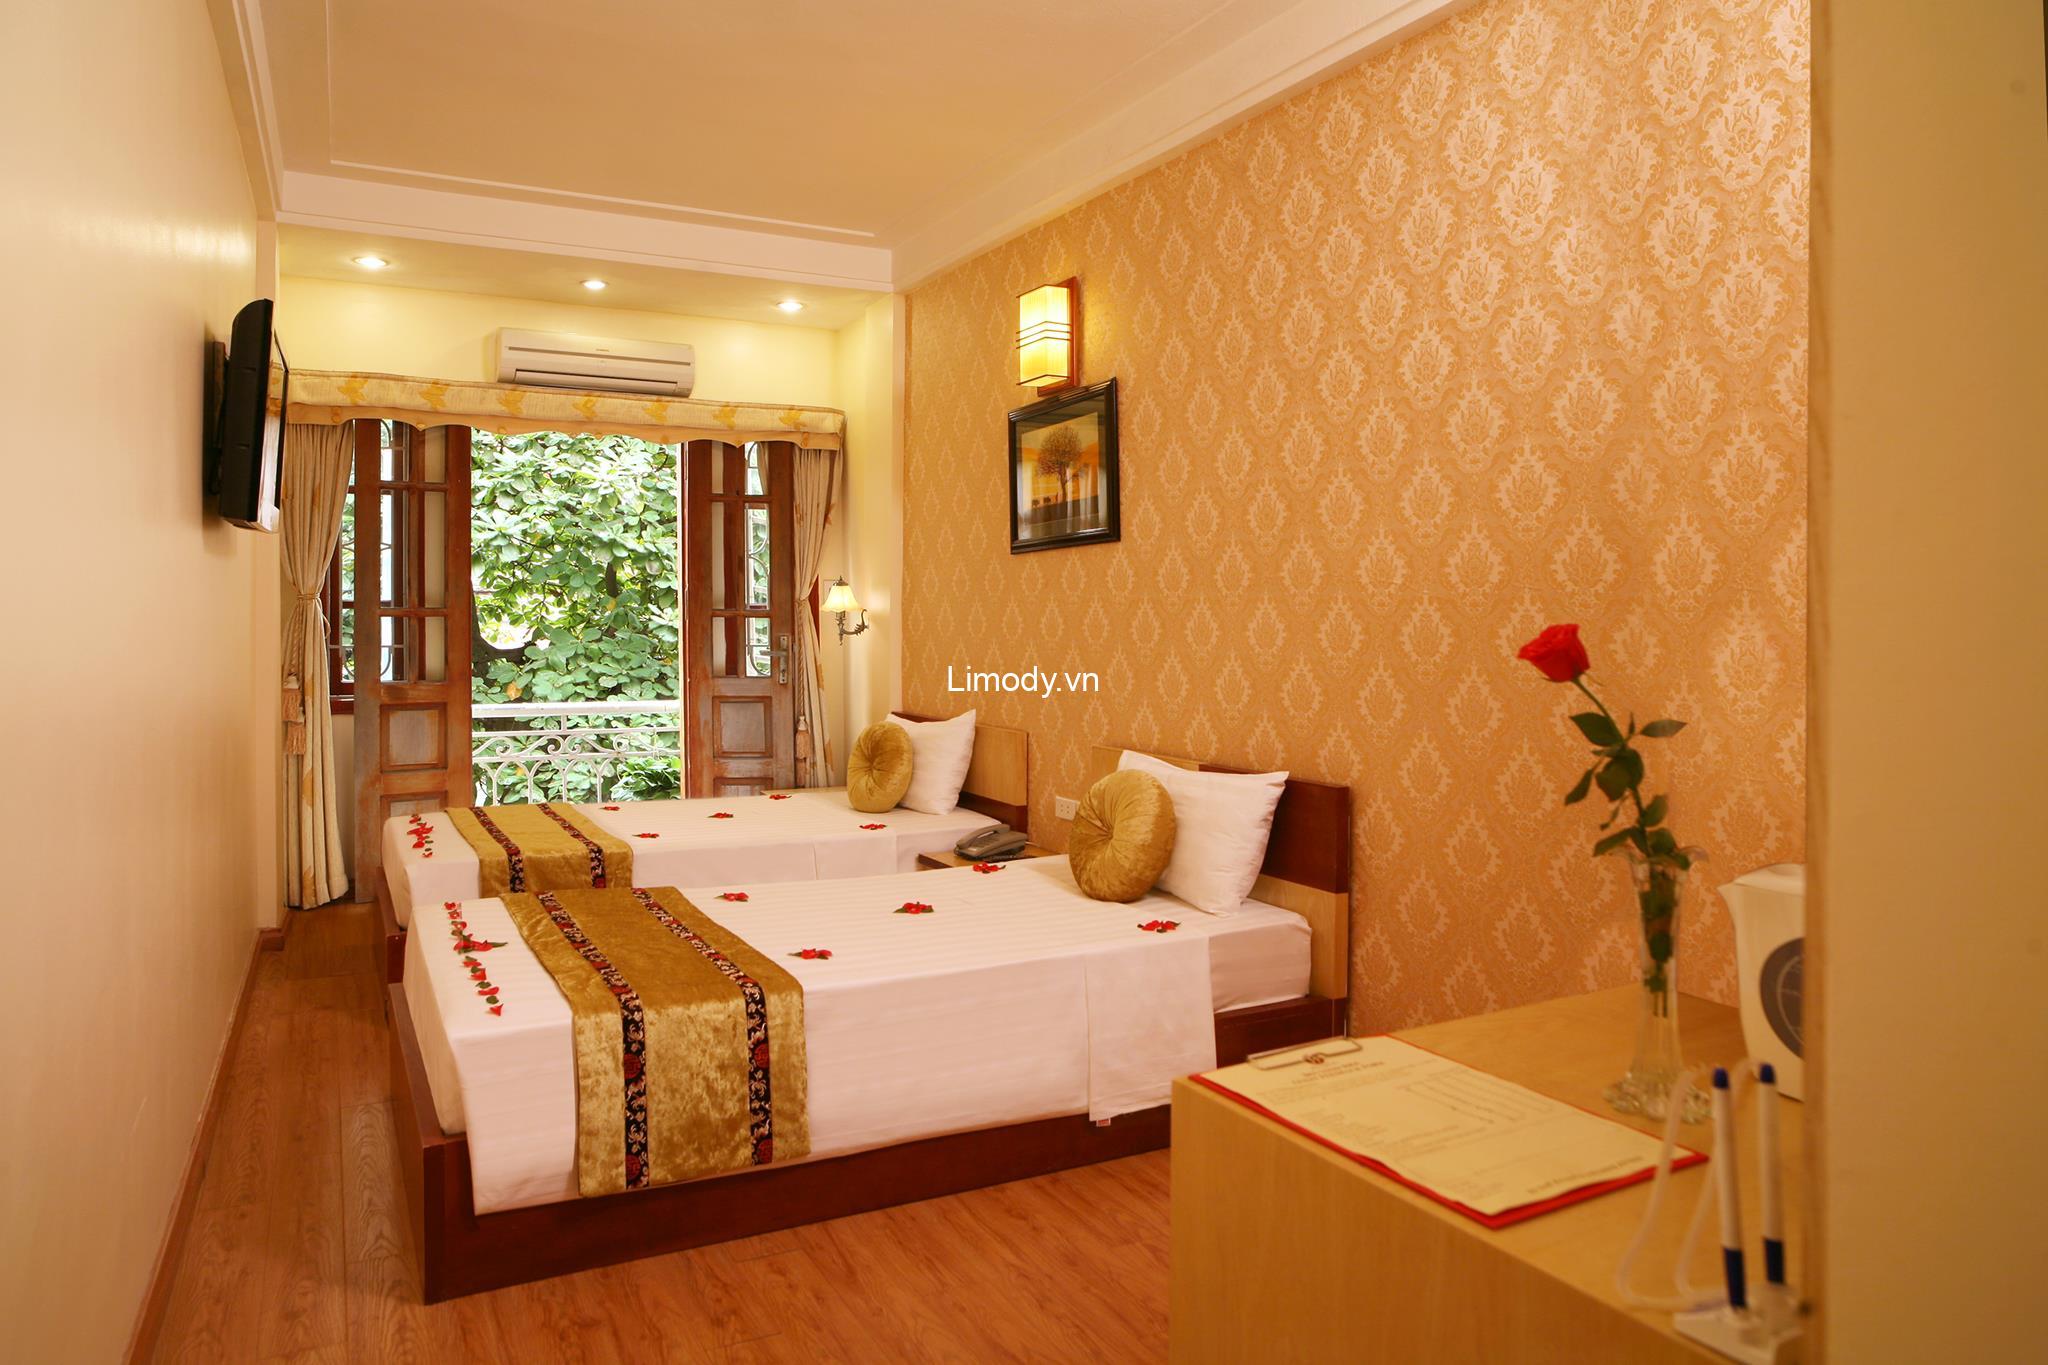 Top 20 Hostel guesthouse nhà nghỉ Hà Nội giá rẻ đẹp ở trung tâm tốt nhất